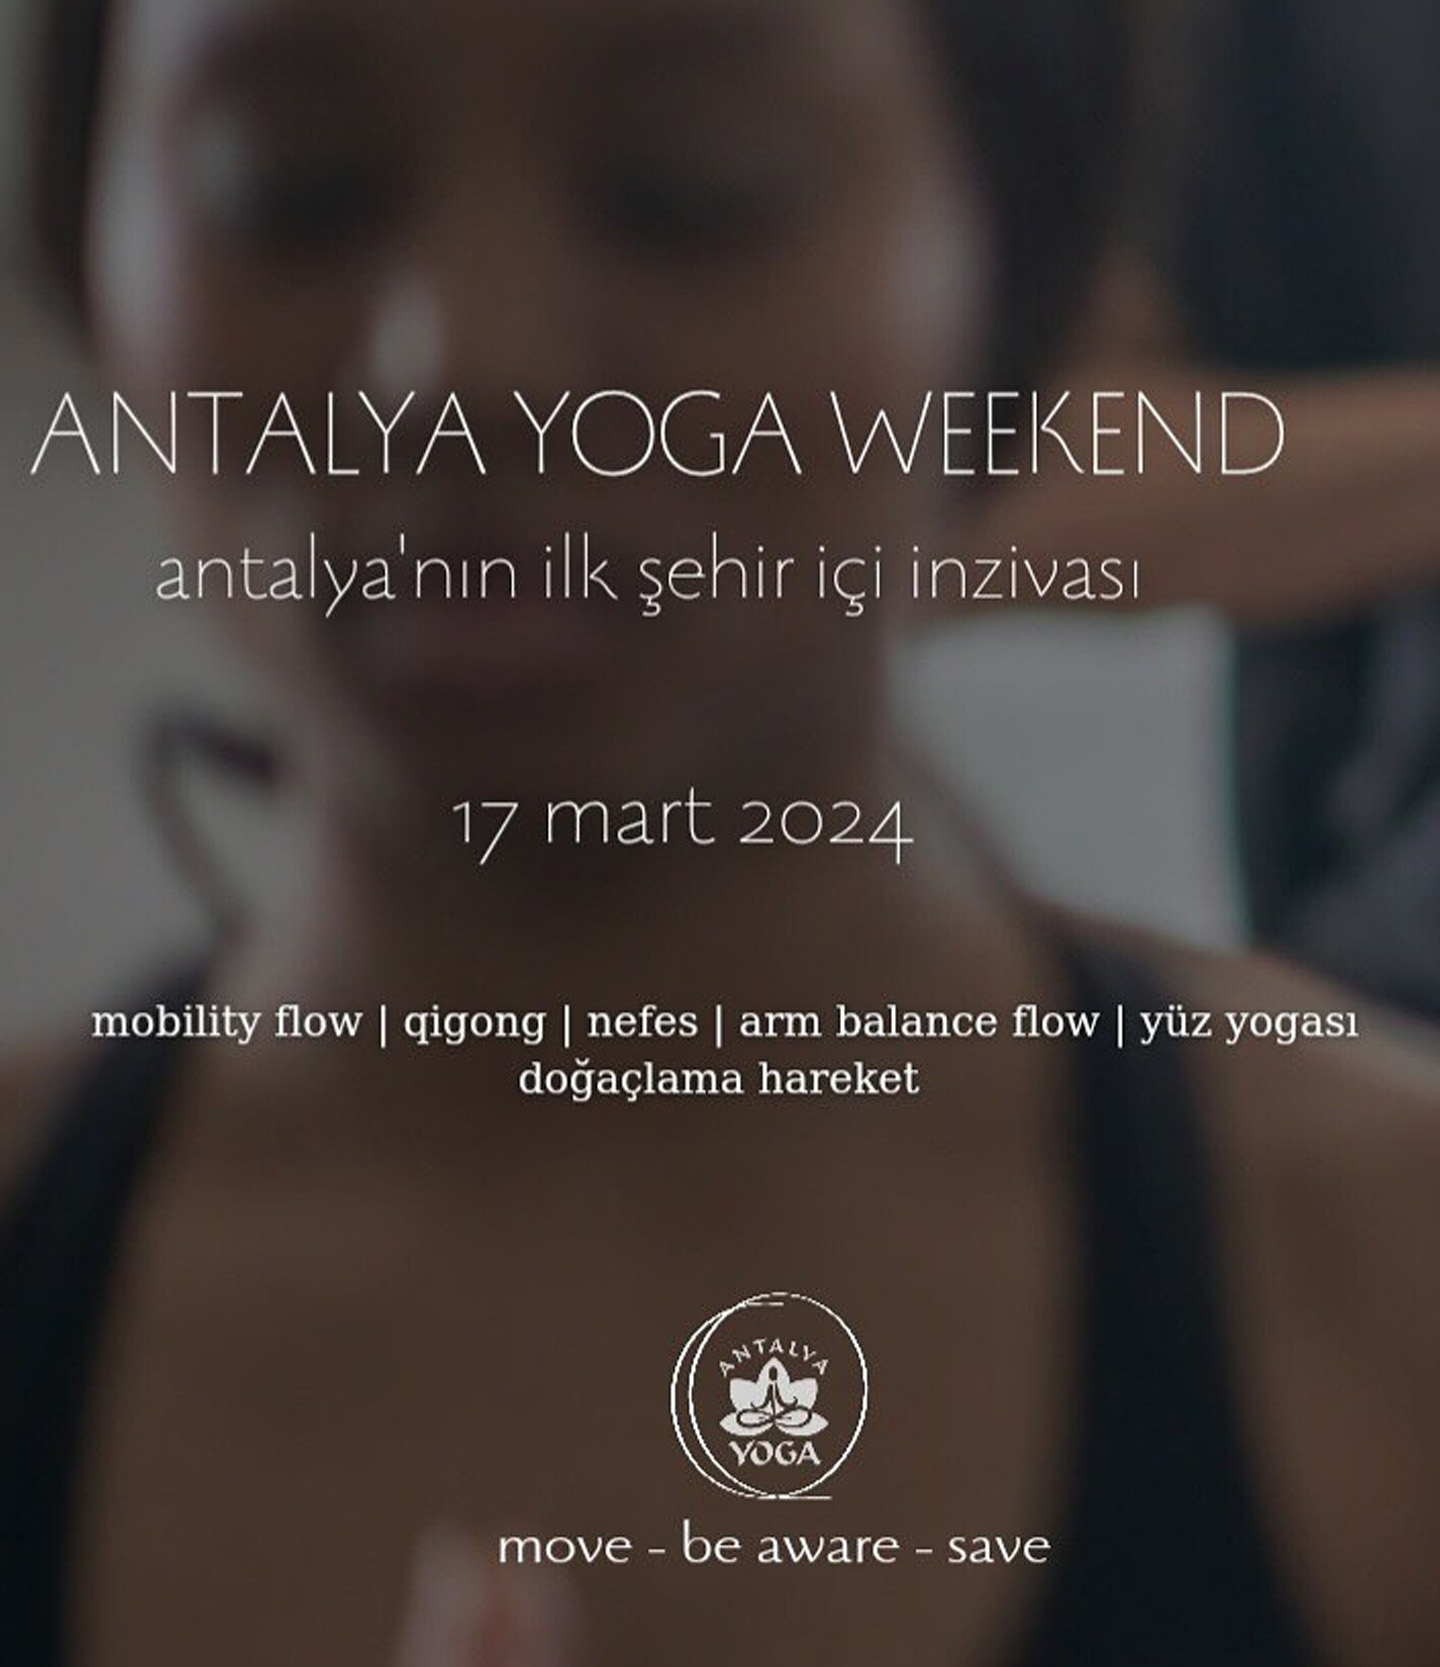 Antalya Yoga